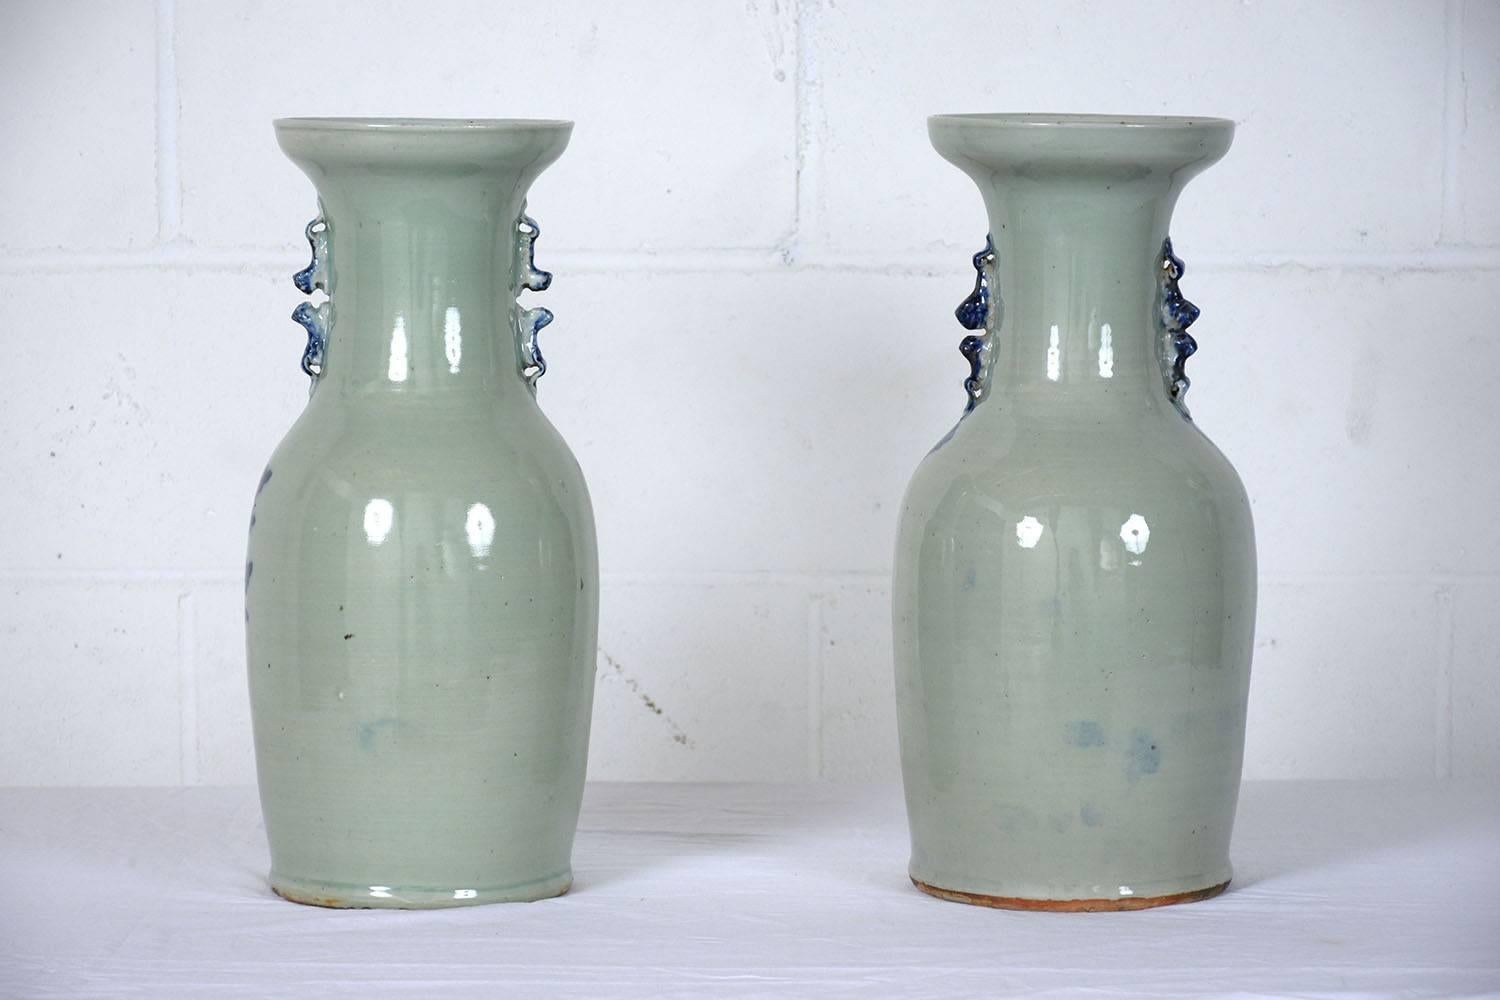 blue and white ceramic vases